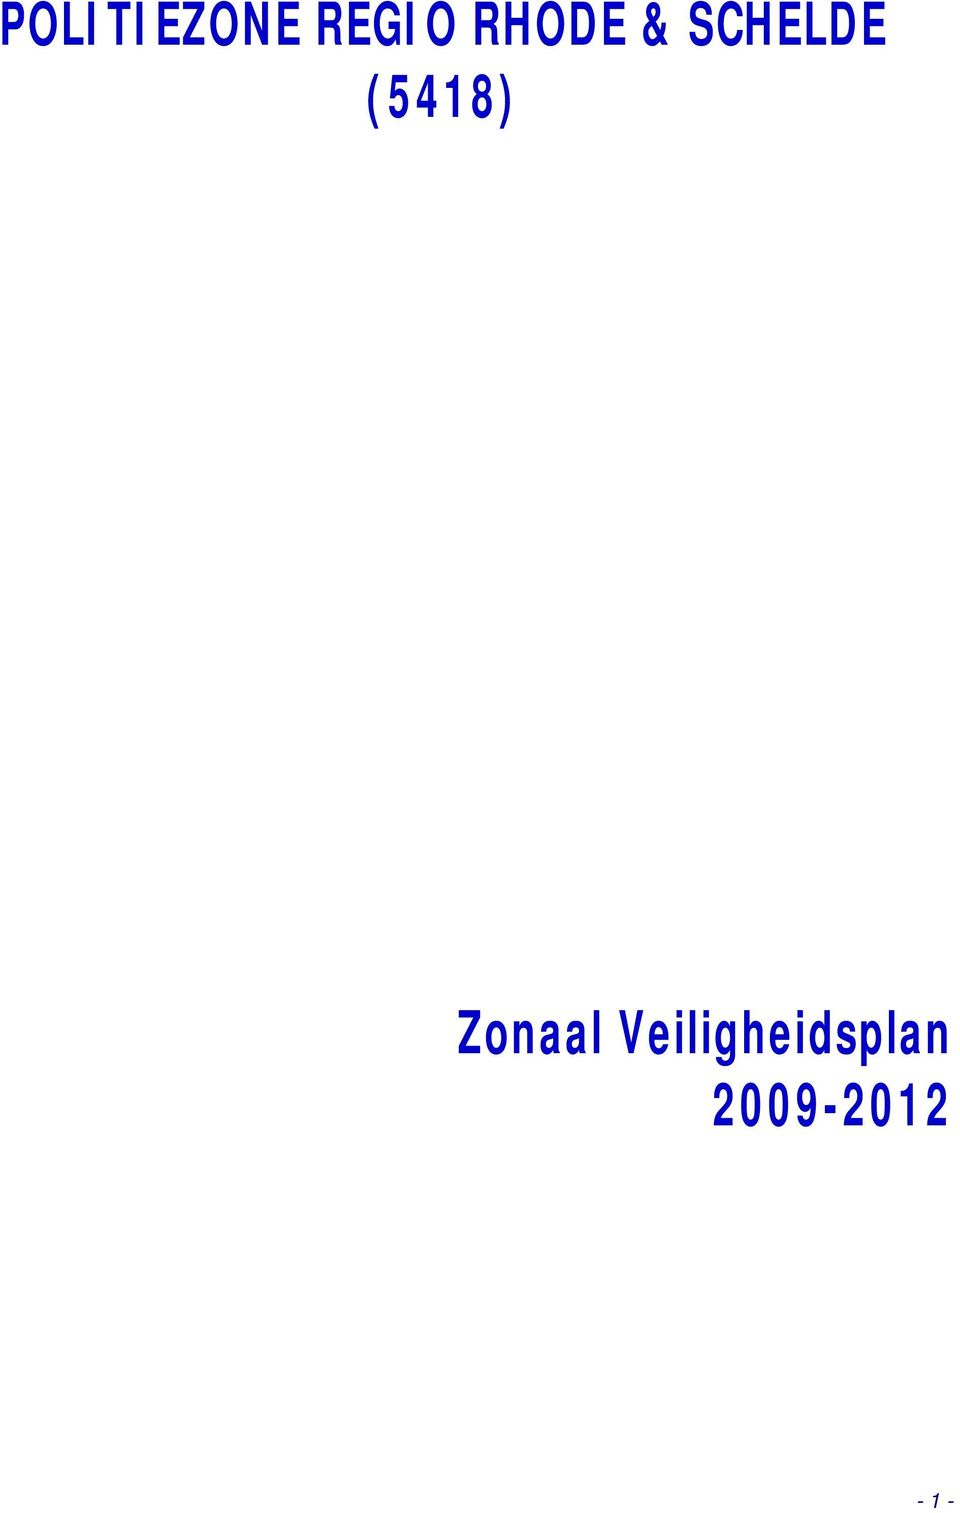 (5418) Zonaal